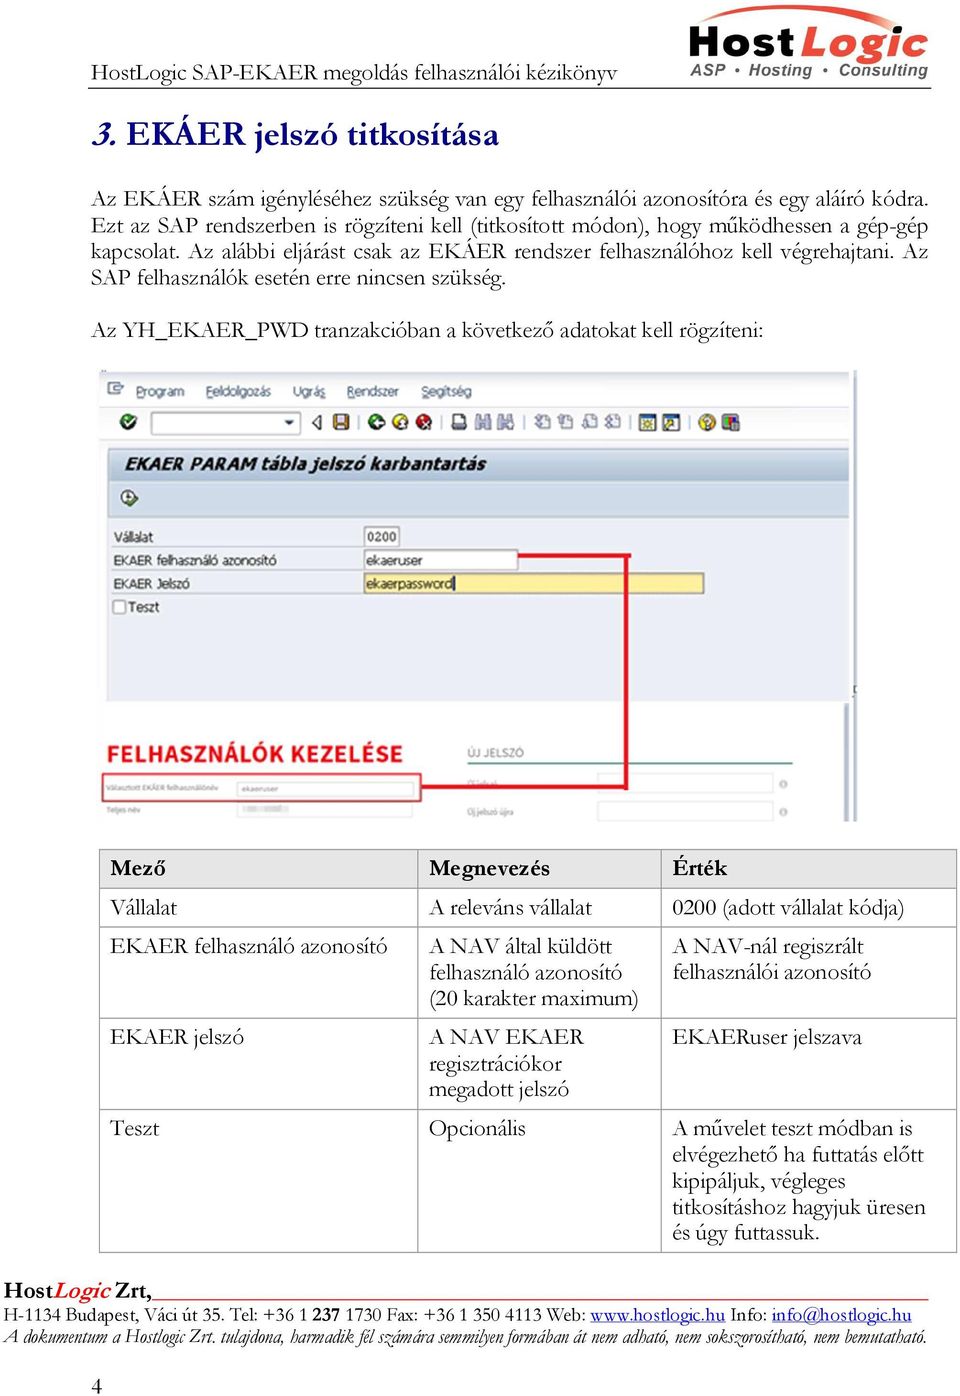 Felhasználói kézikönyv HostLogic SAP EKAER 2.0 megoldáshoz - PDF Free  Download